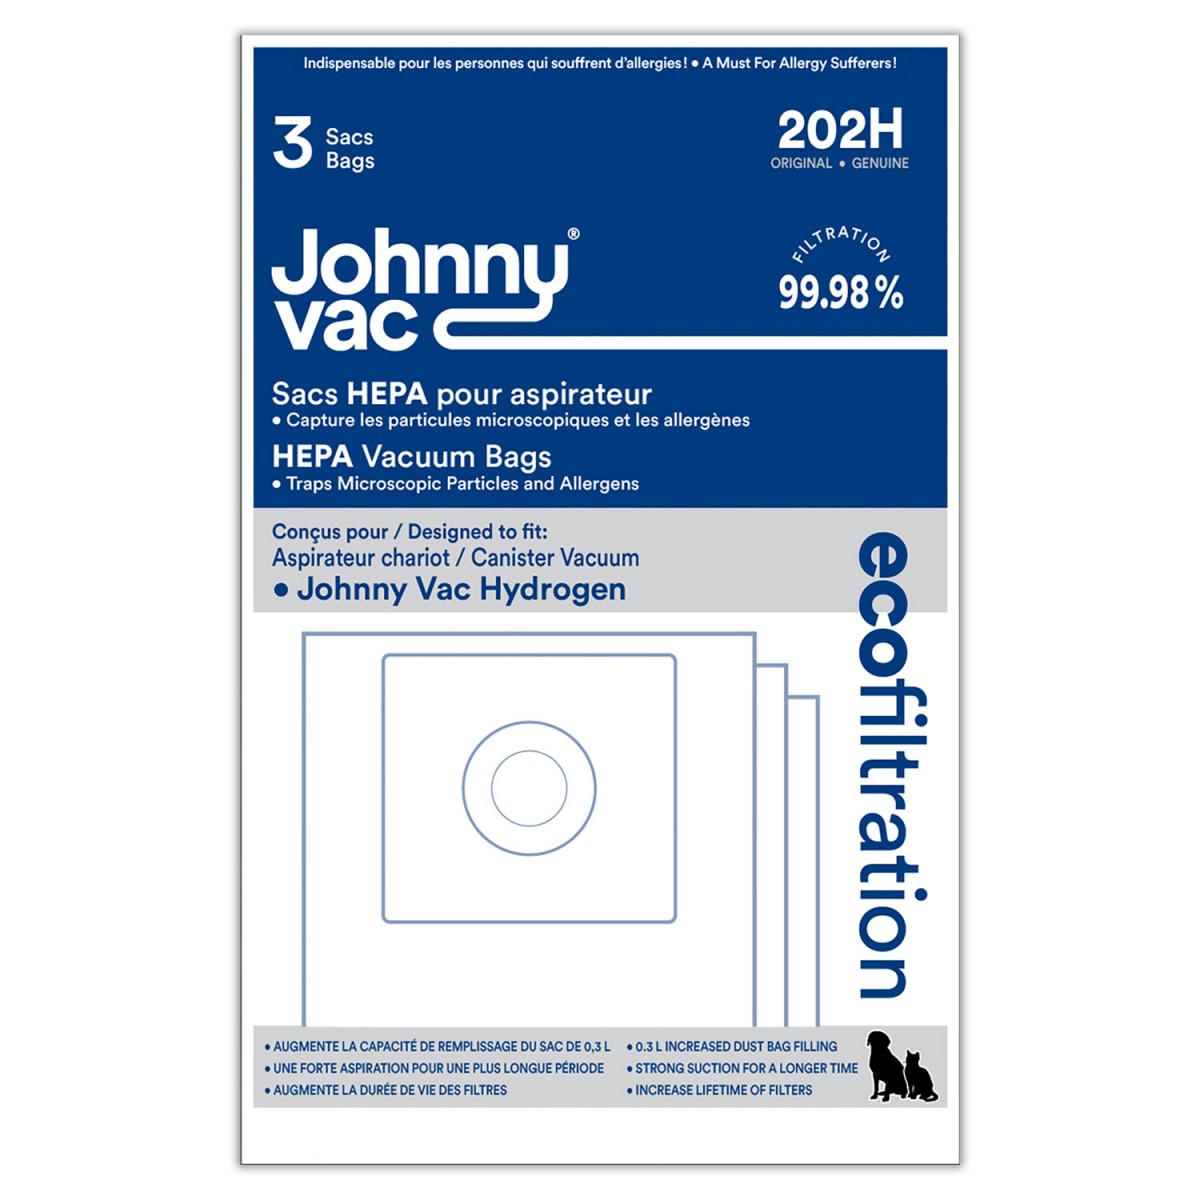 Sac microfiltre HEPA pour aspirateur Johnny Vac Hydrogen - paquet